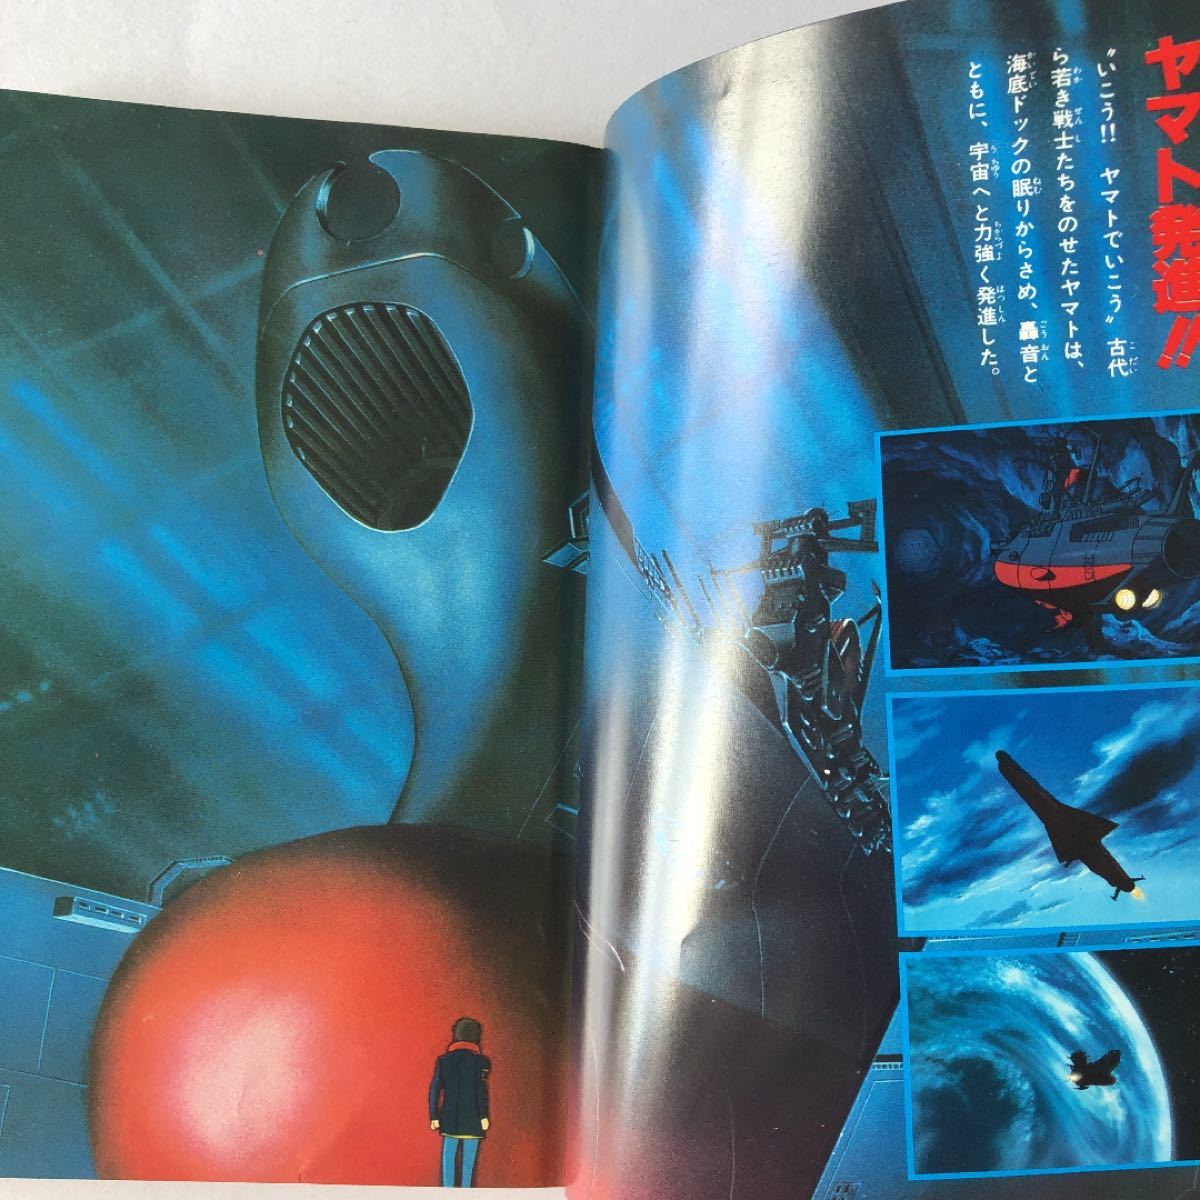 さらば宇宙戦艦ヤマト 愛の戦士たち 上下巻 集英社 モンキー文庫 1978年